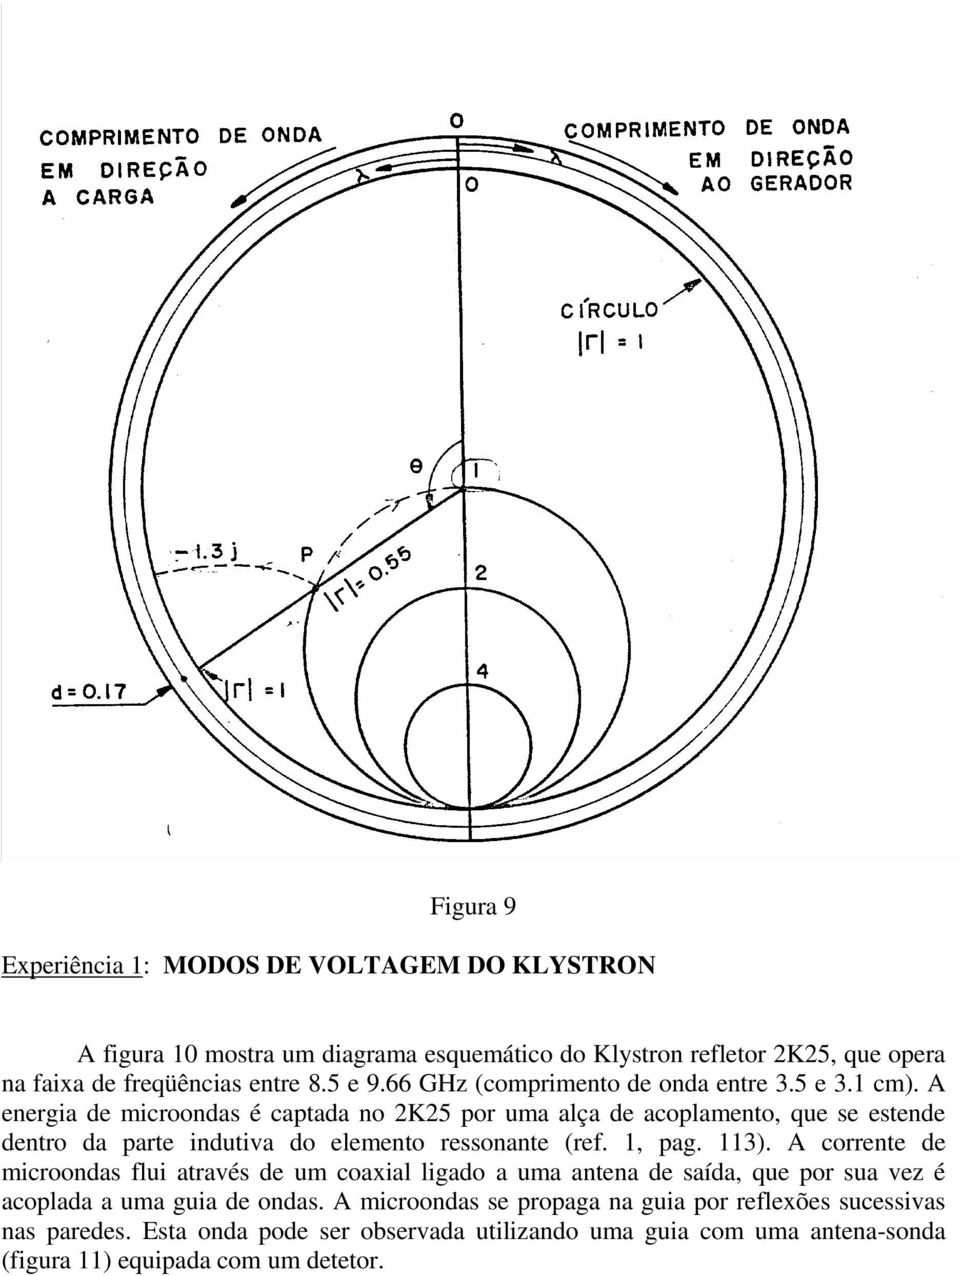 A energia de microondas é captada no K5 por uma alça de acoplamento, que se estende dentro da parte indutiva do elemento ressonante (ref. 1, pag. 113).